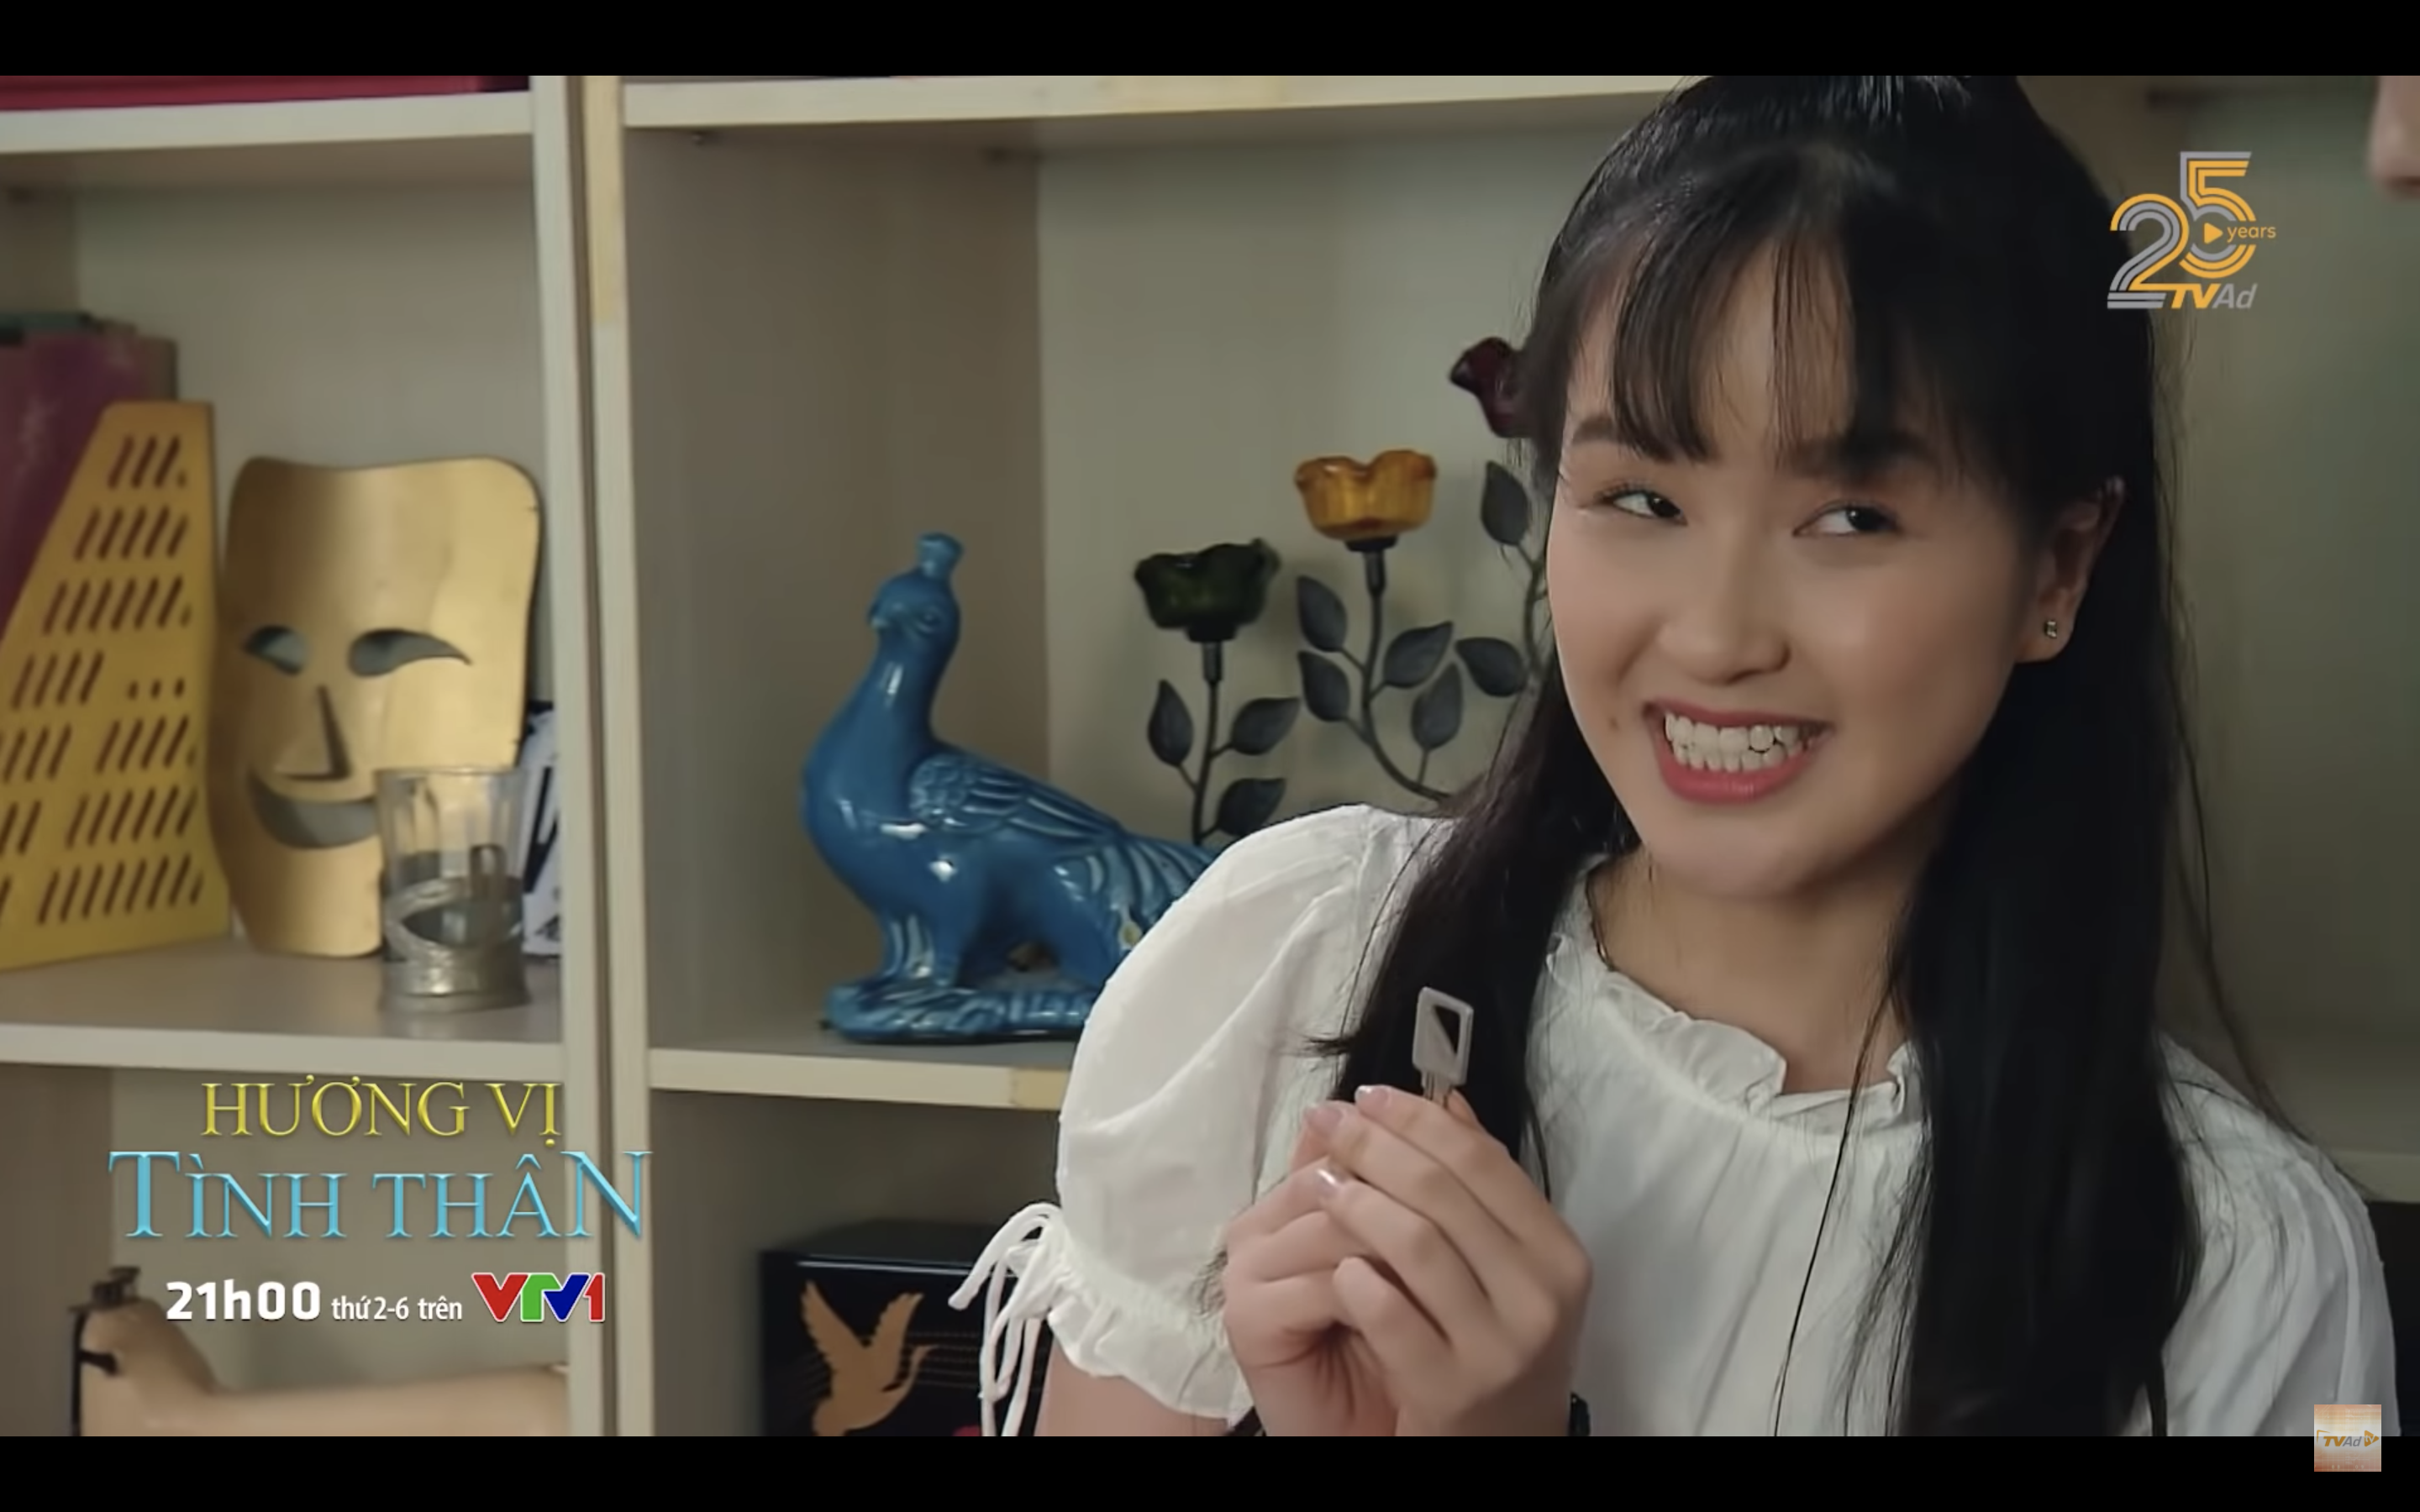 Cô nhân viên xinh đẹp tranh thủ cơ hội thả thính Huy trong tập 98 “Hương vị tình thân“. Ảnh: CMH